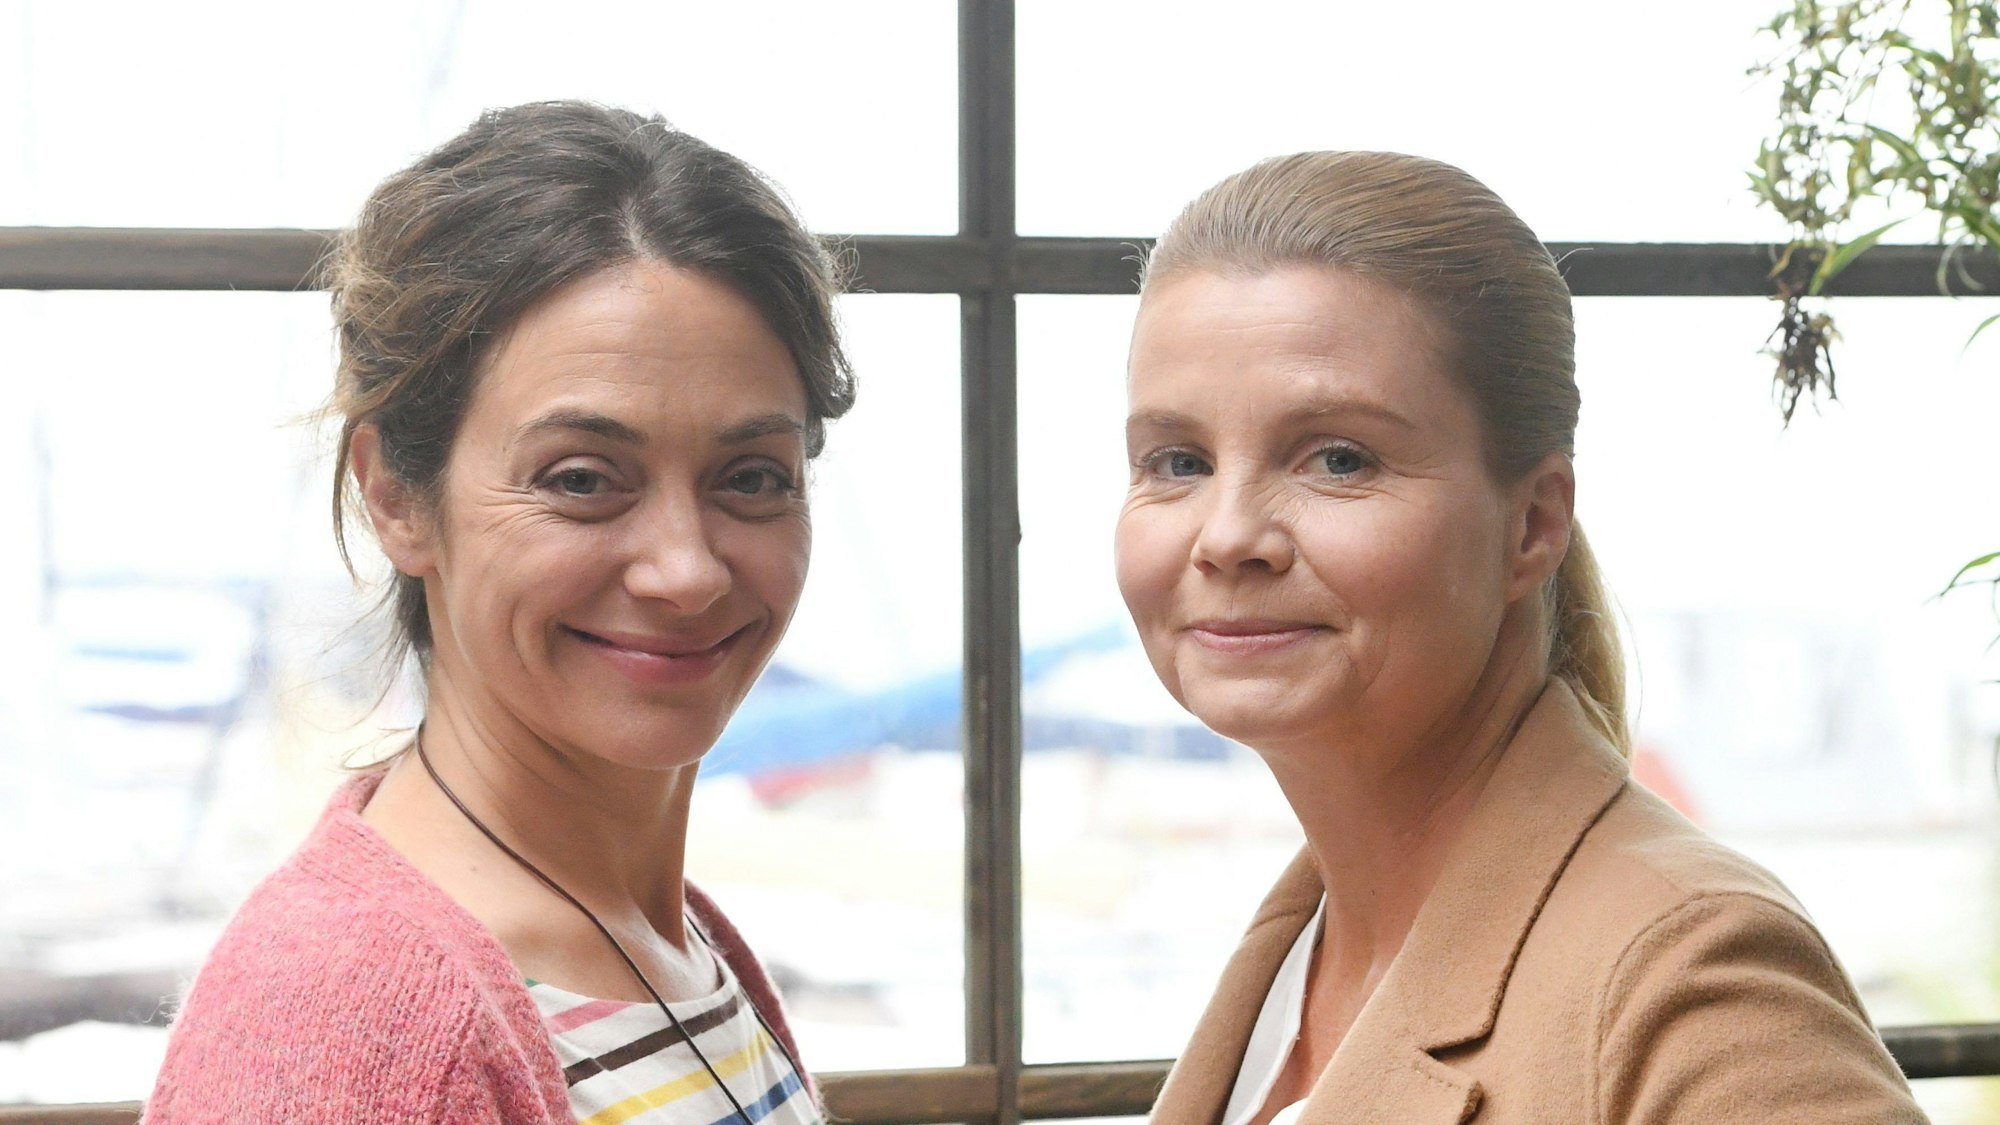 Die Schauspielerinnen Julia Richter und Annette Frier (l-r) stehen bei einem Fototermin zur Herzkino-Reihe "Ella Schön" (ZDF) am Set.